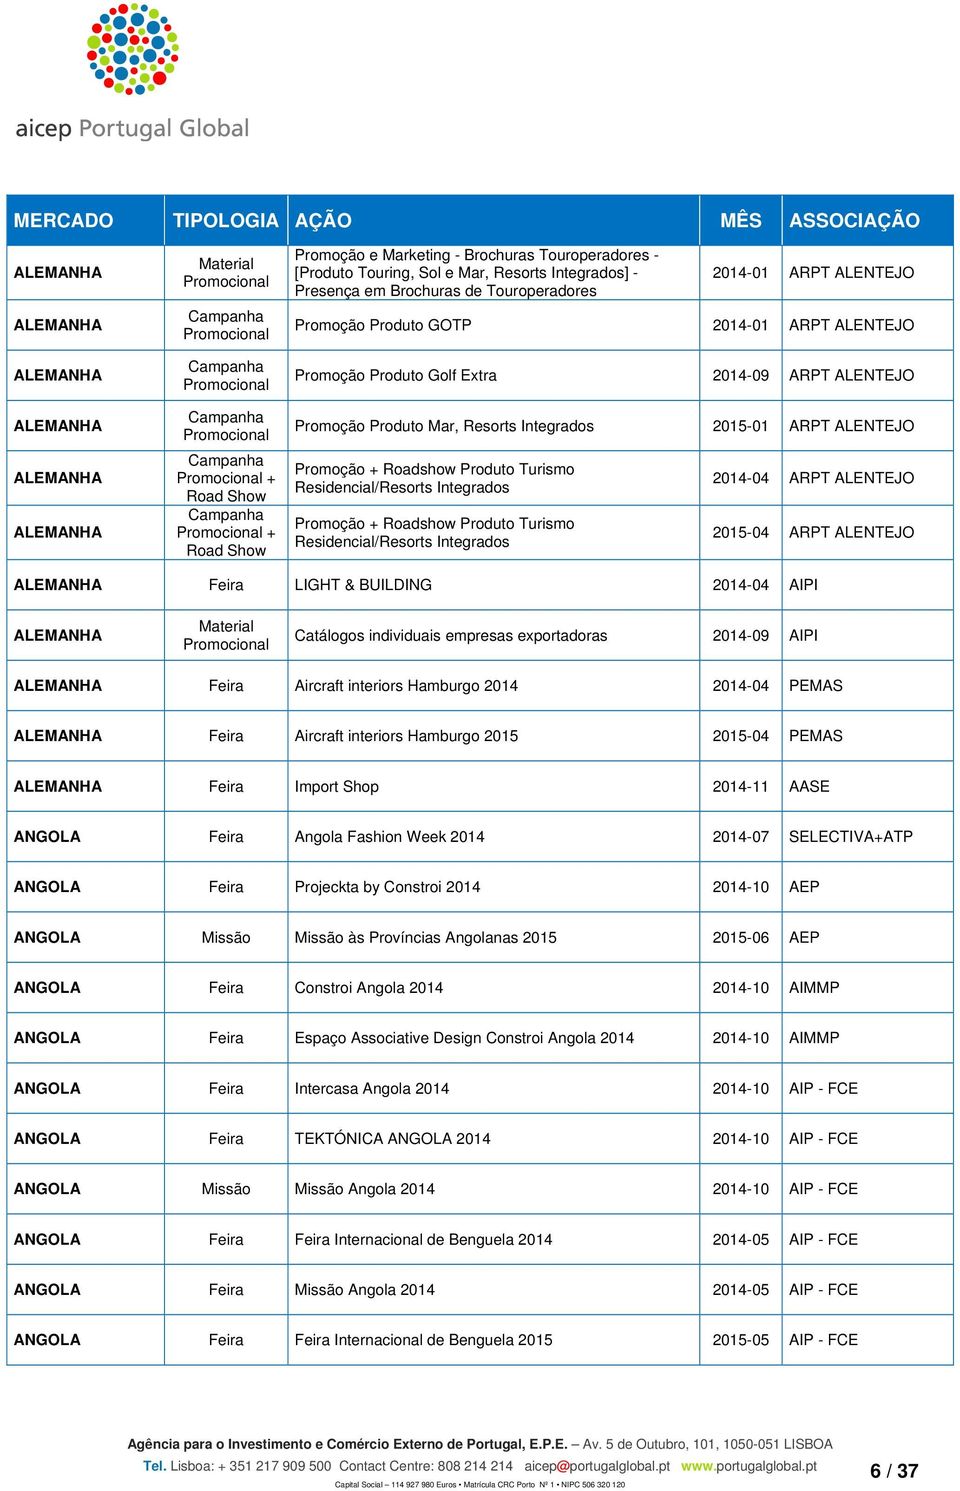 ALENTEJO 2015-04 ARPT ALENTEJO LIGHT & BUILDING 2014-04 AIPI Material Promocional Catálogos individuais empresas exportadoras 2014-09 AIPI Aircraft interiors Hamburgo 2014 2014-04 PEMAS Aircraft